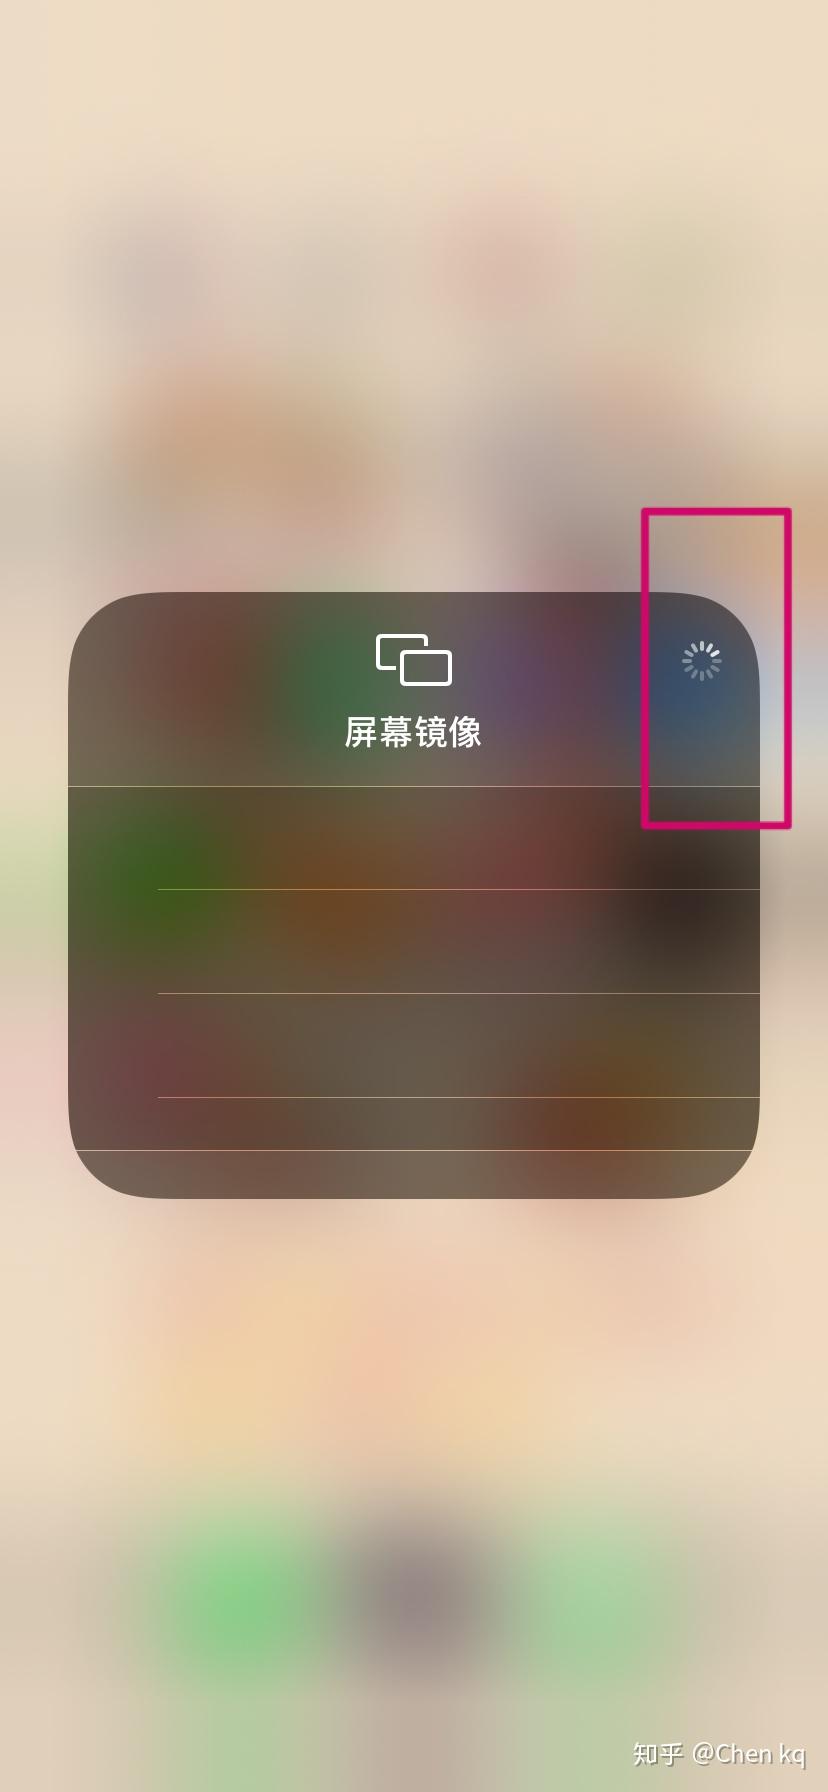 开启苹果xr 屏幕镜像右上角一直转圈 并没有显